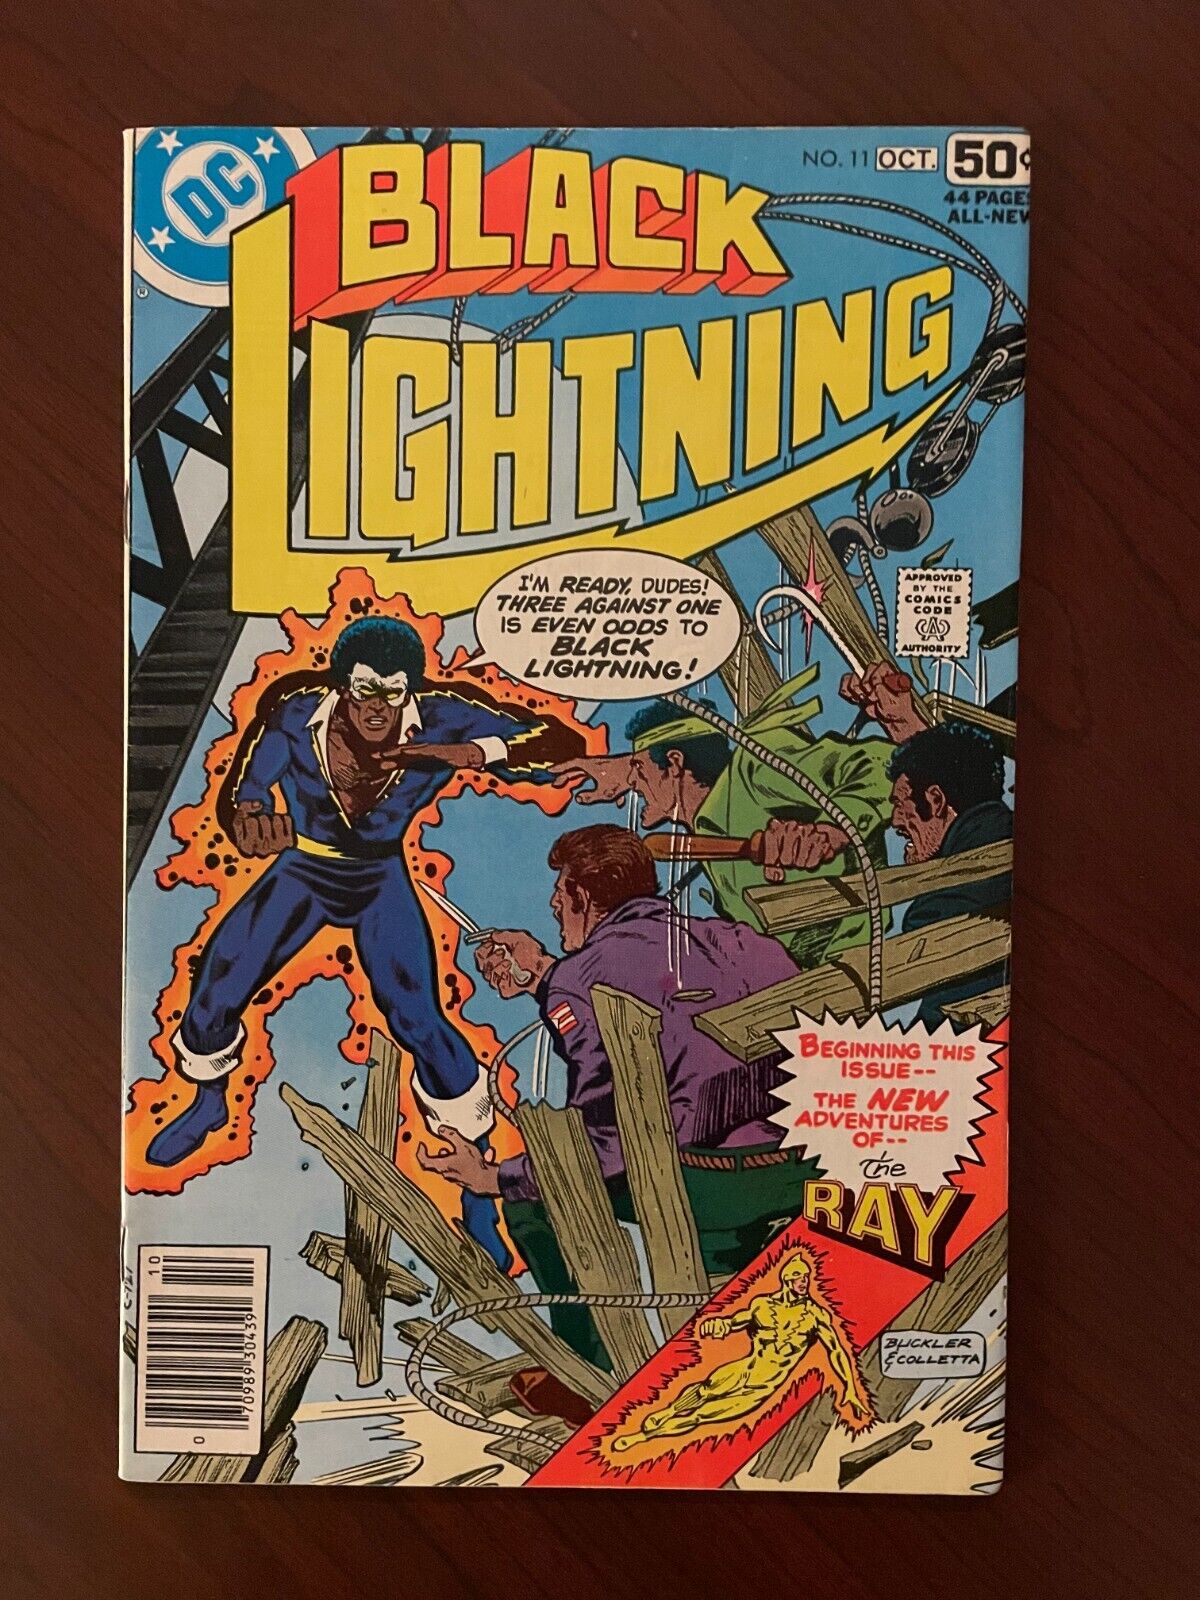 Black Lightning #11 (DC Comics 1978) Bronze Age Trevor von Eeden 9.0 VF/NM